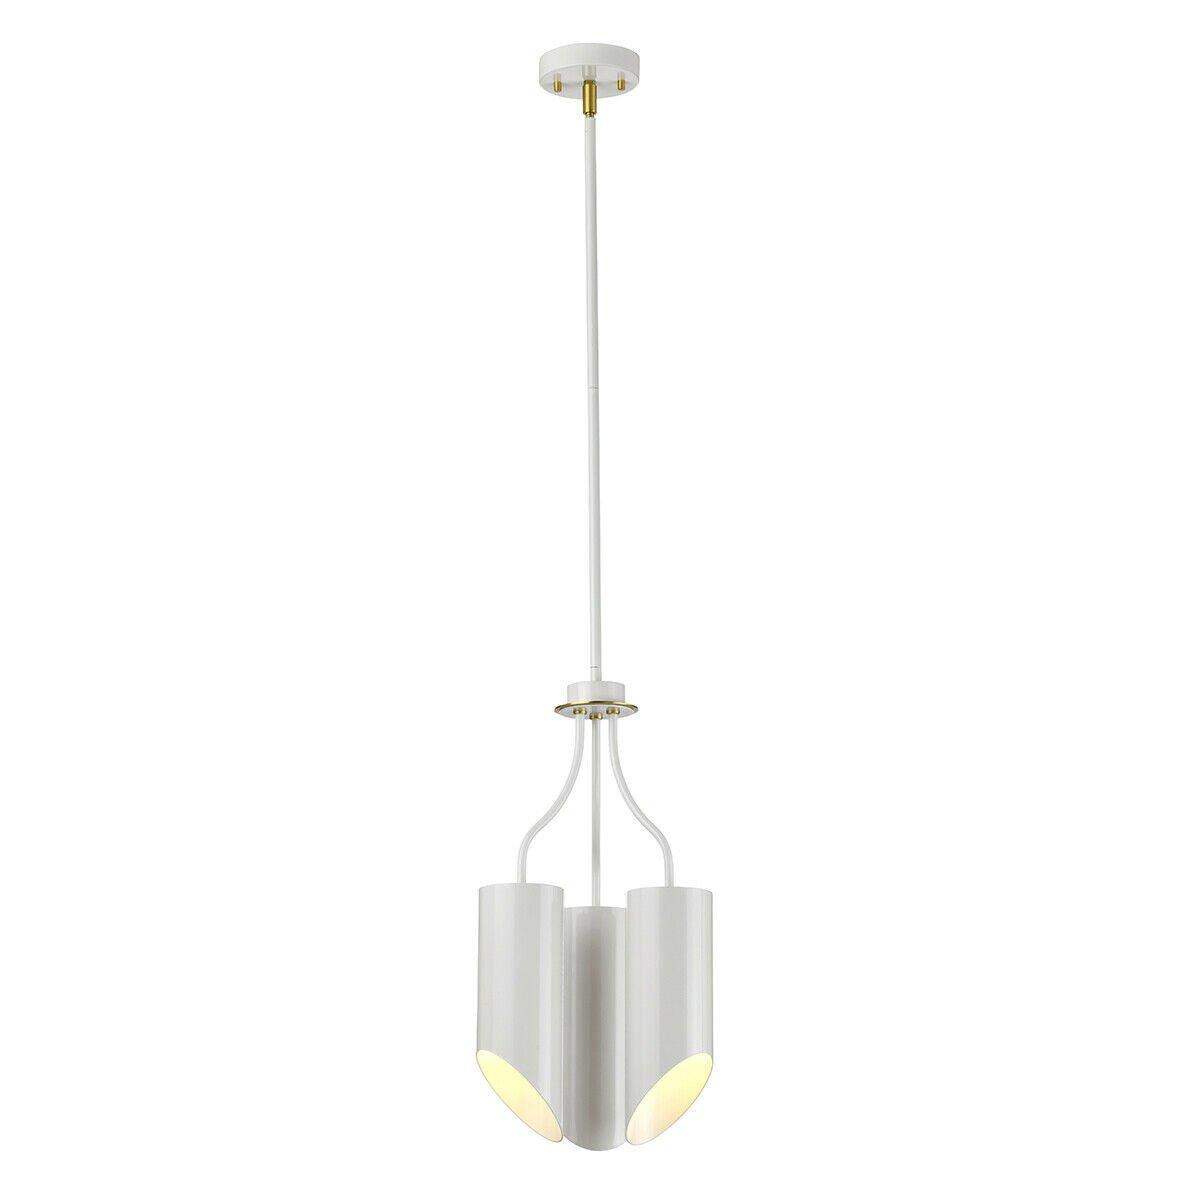 3 Bulb Chandelier Hanging Pendant LIght White Aged Brass Finish LED E27 8W Bulb